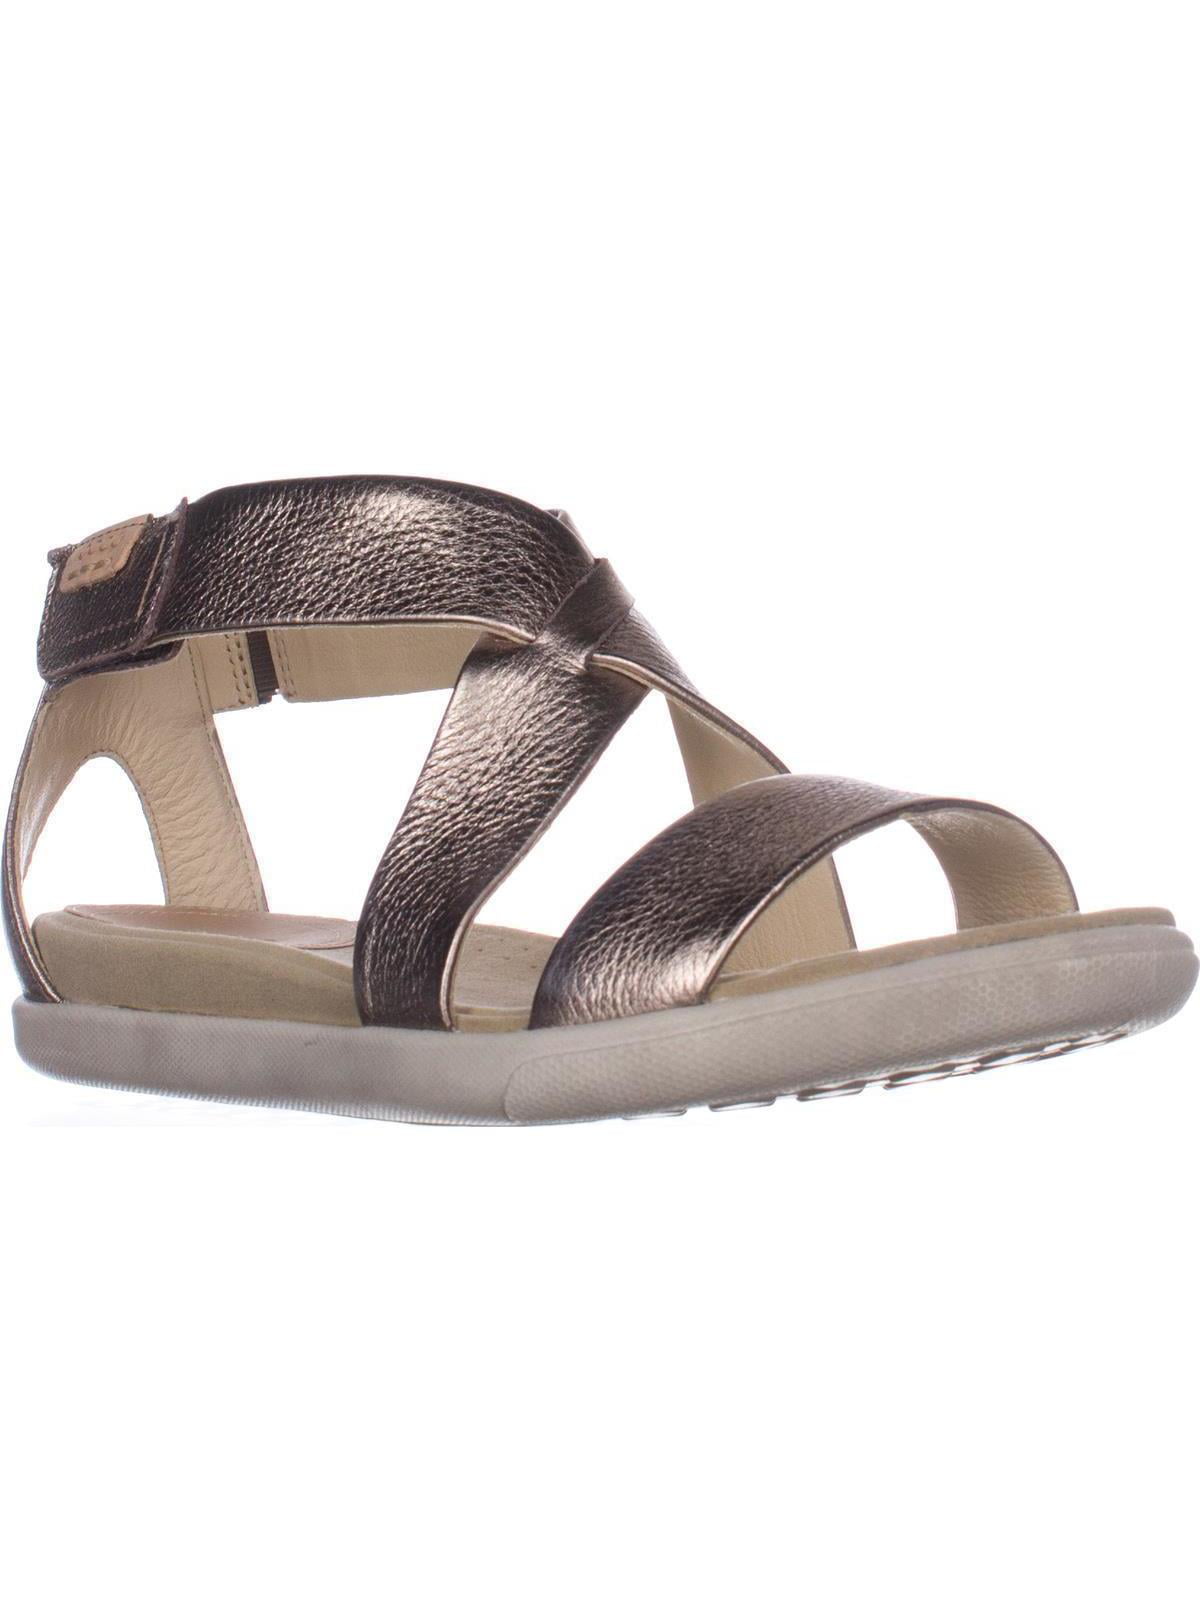 Womens ECCO Flat Comfort Sandals, - Walmart.com